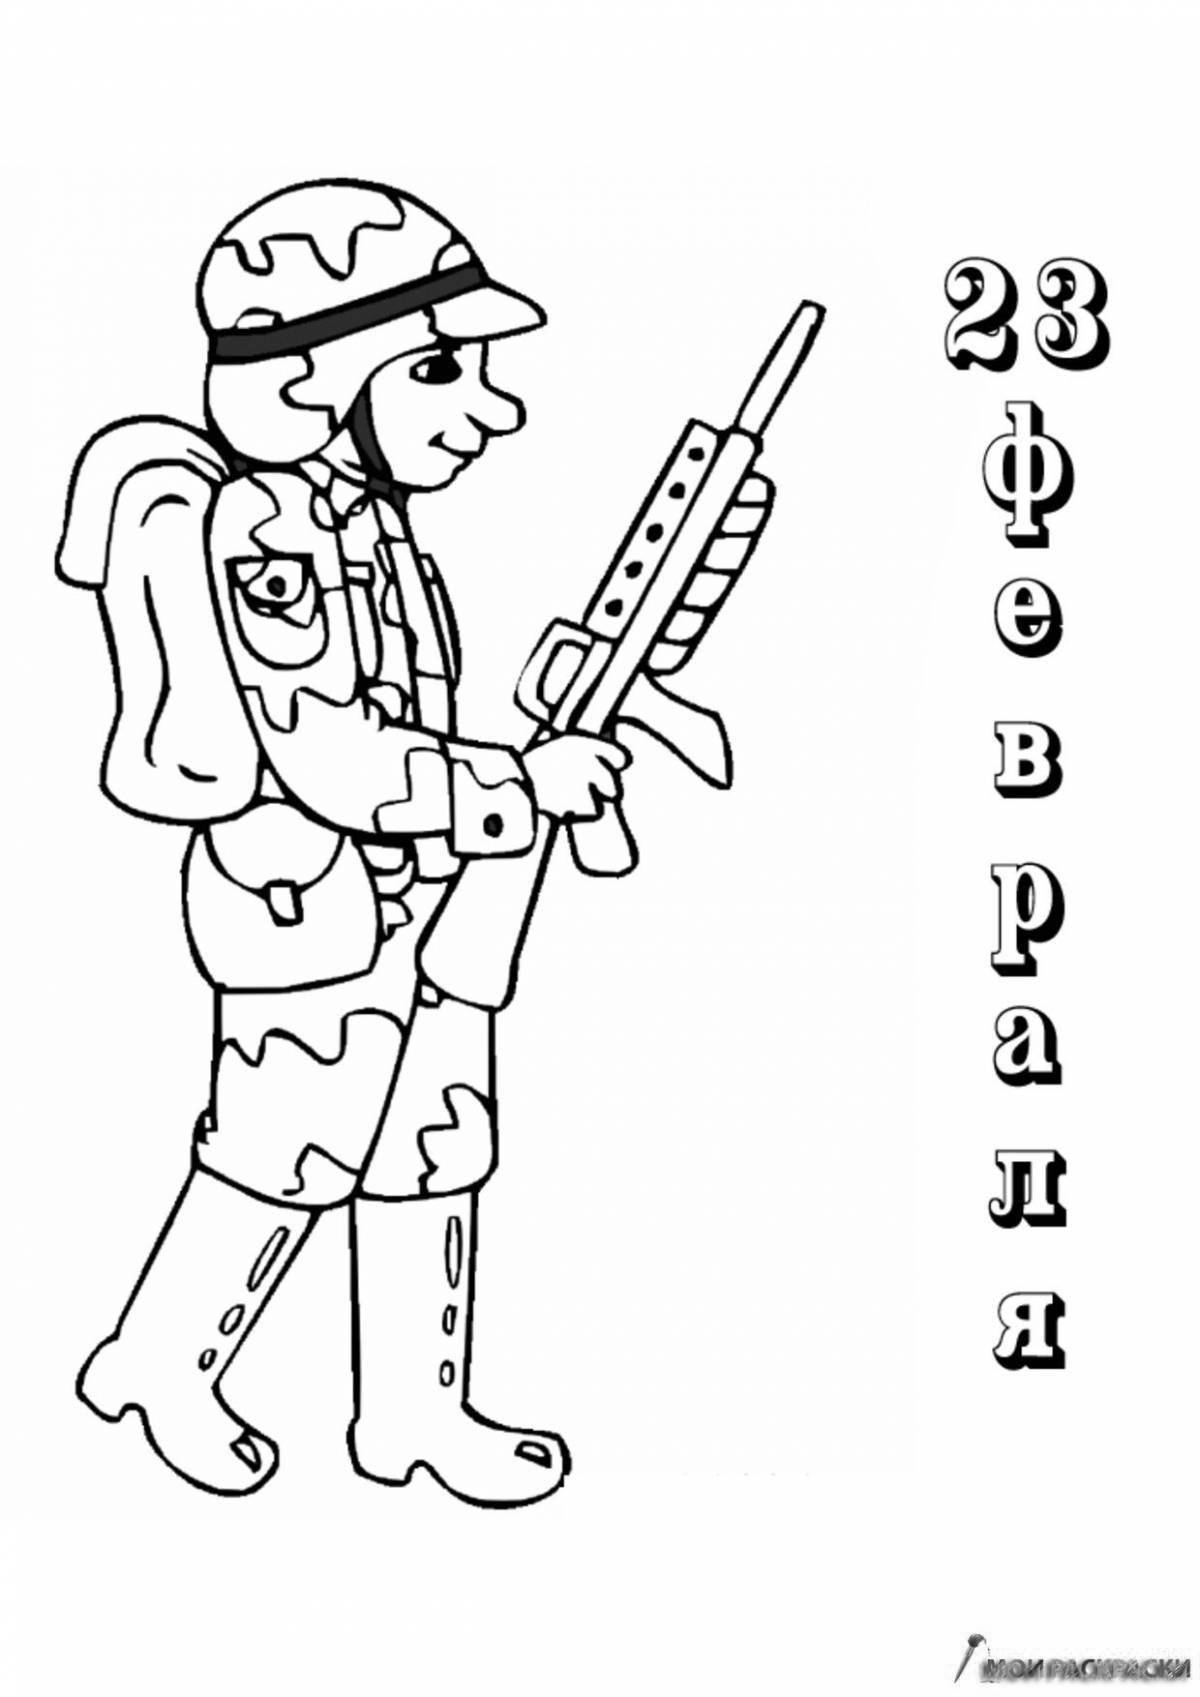 Яркая раскраска военной профессии для детей 4-5 лет